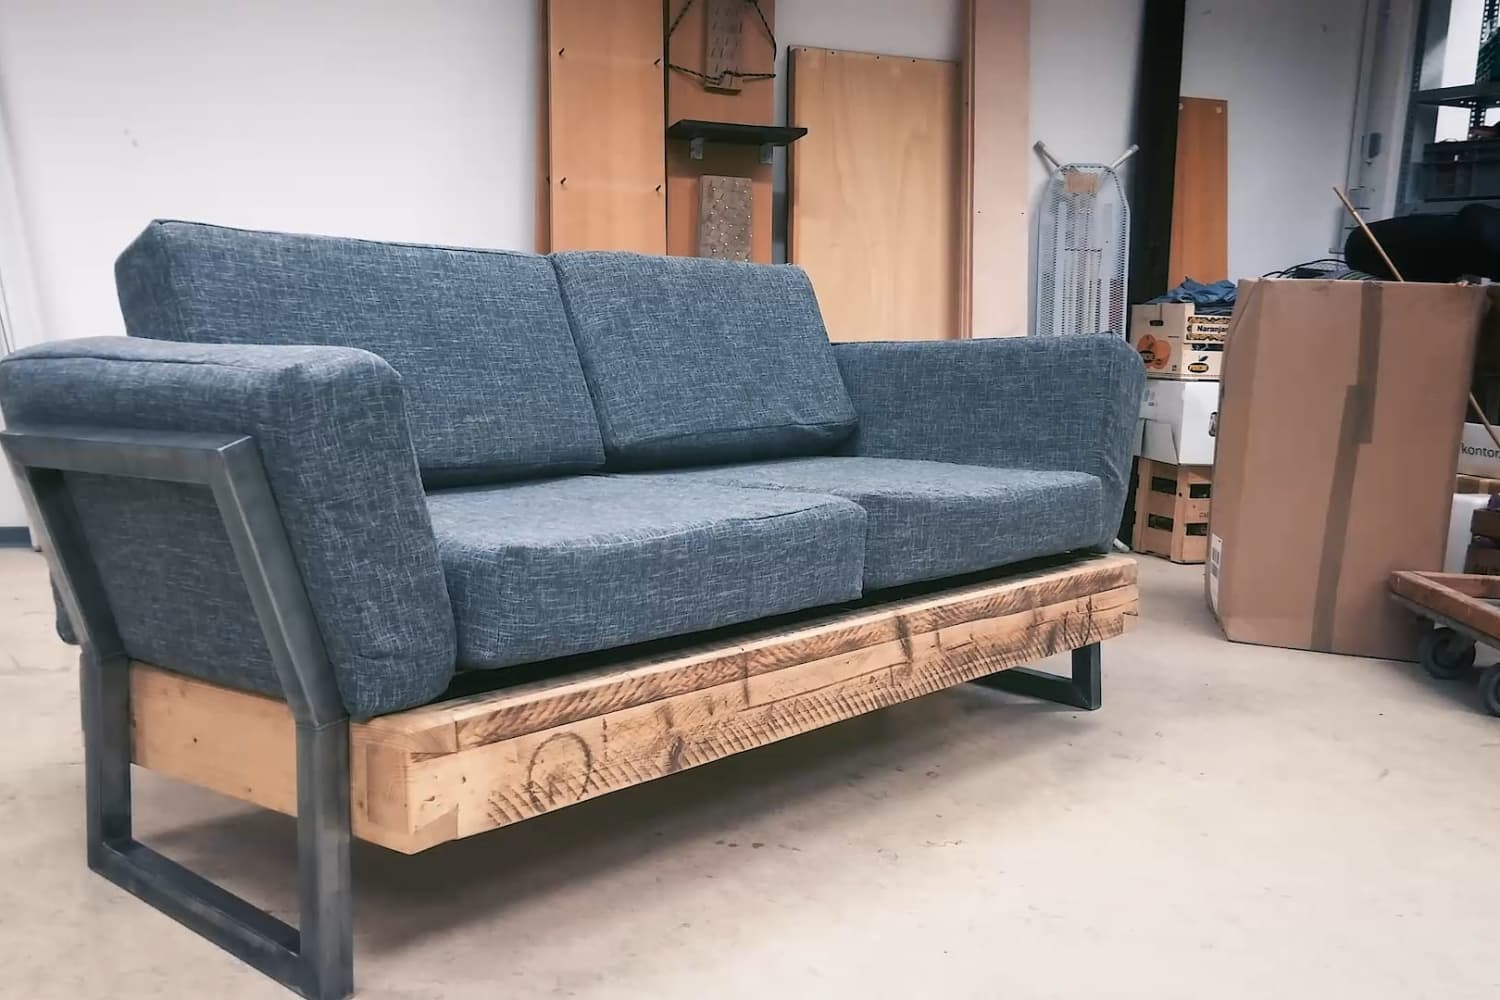 Londen Gelijkwaardig Regelmatig One Reddit User Built This DIY Reclaimed Sofa for $100 | Apartment Therapy